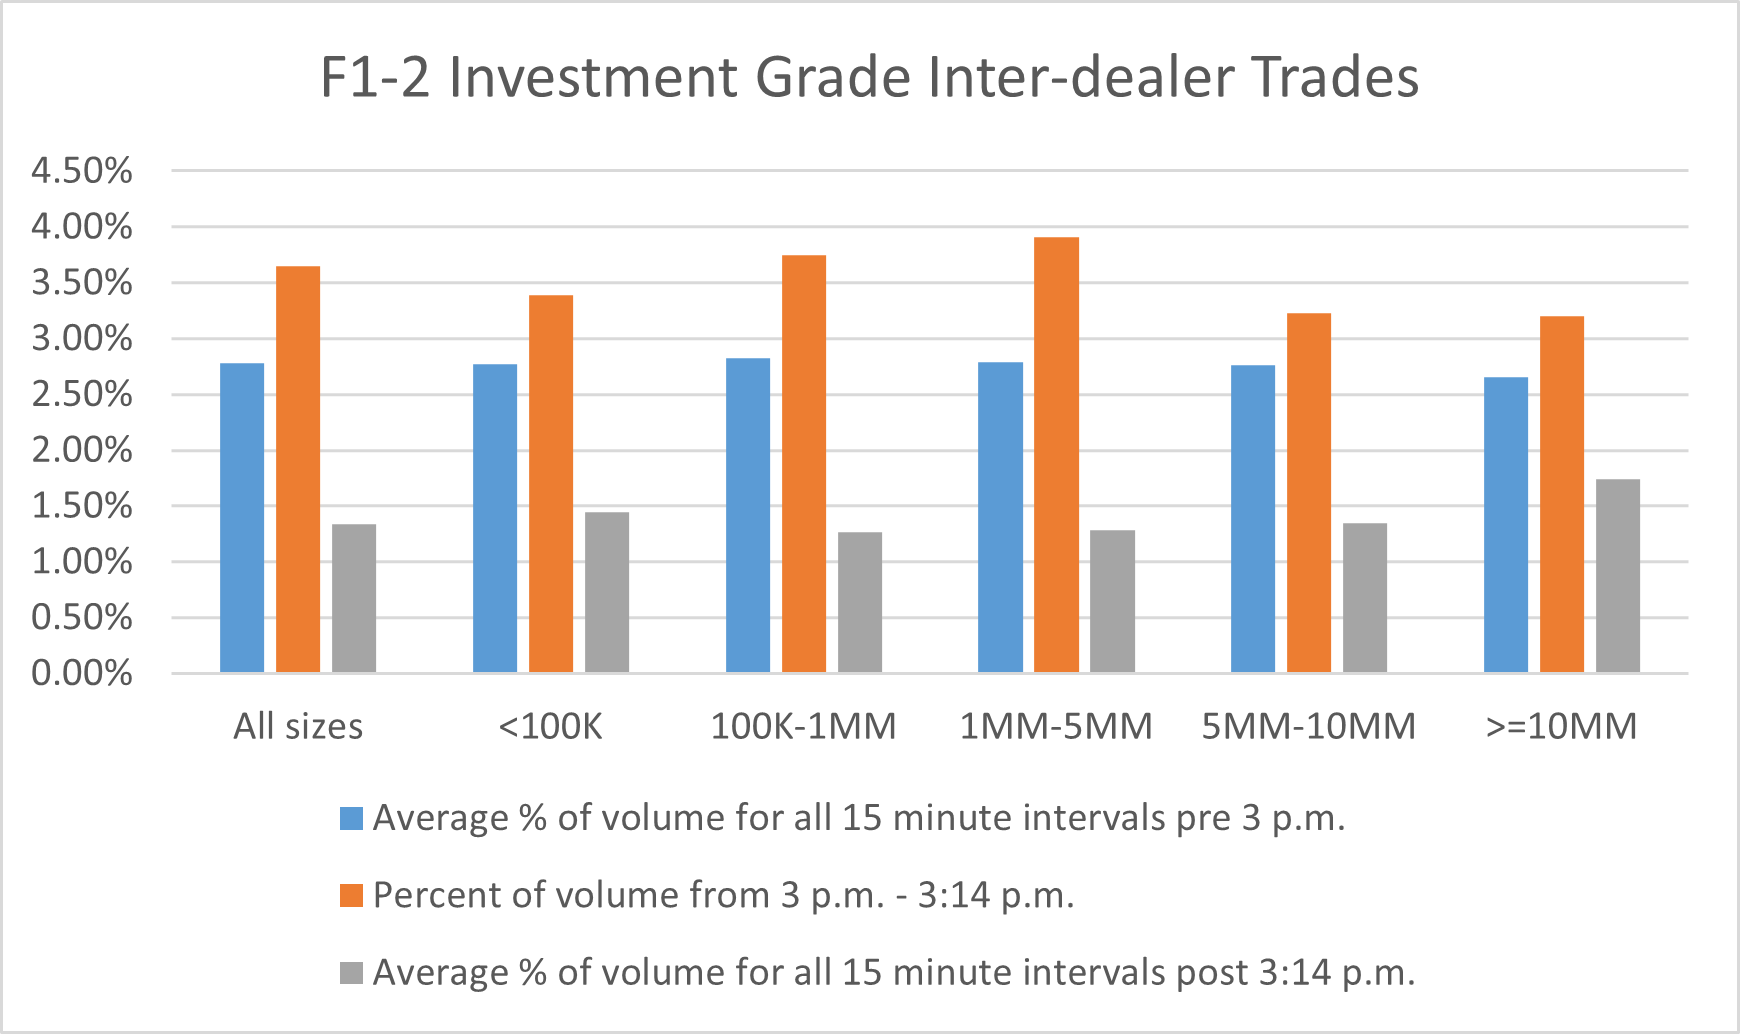 Investment Grade Inter-dealer Trades